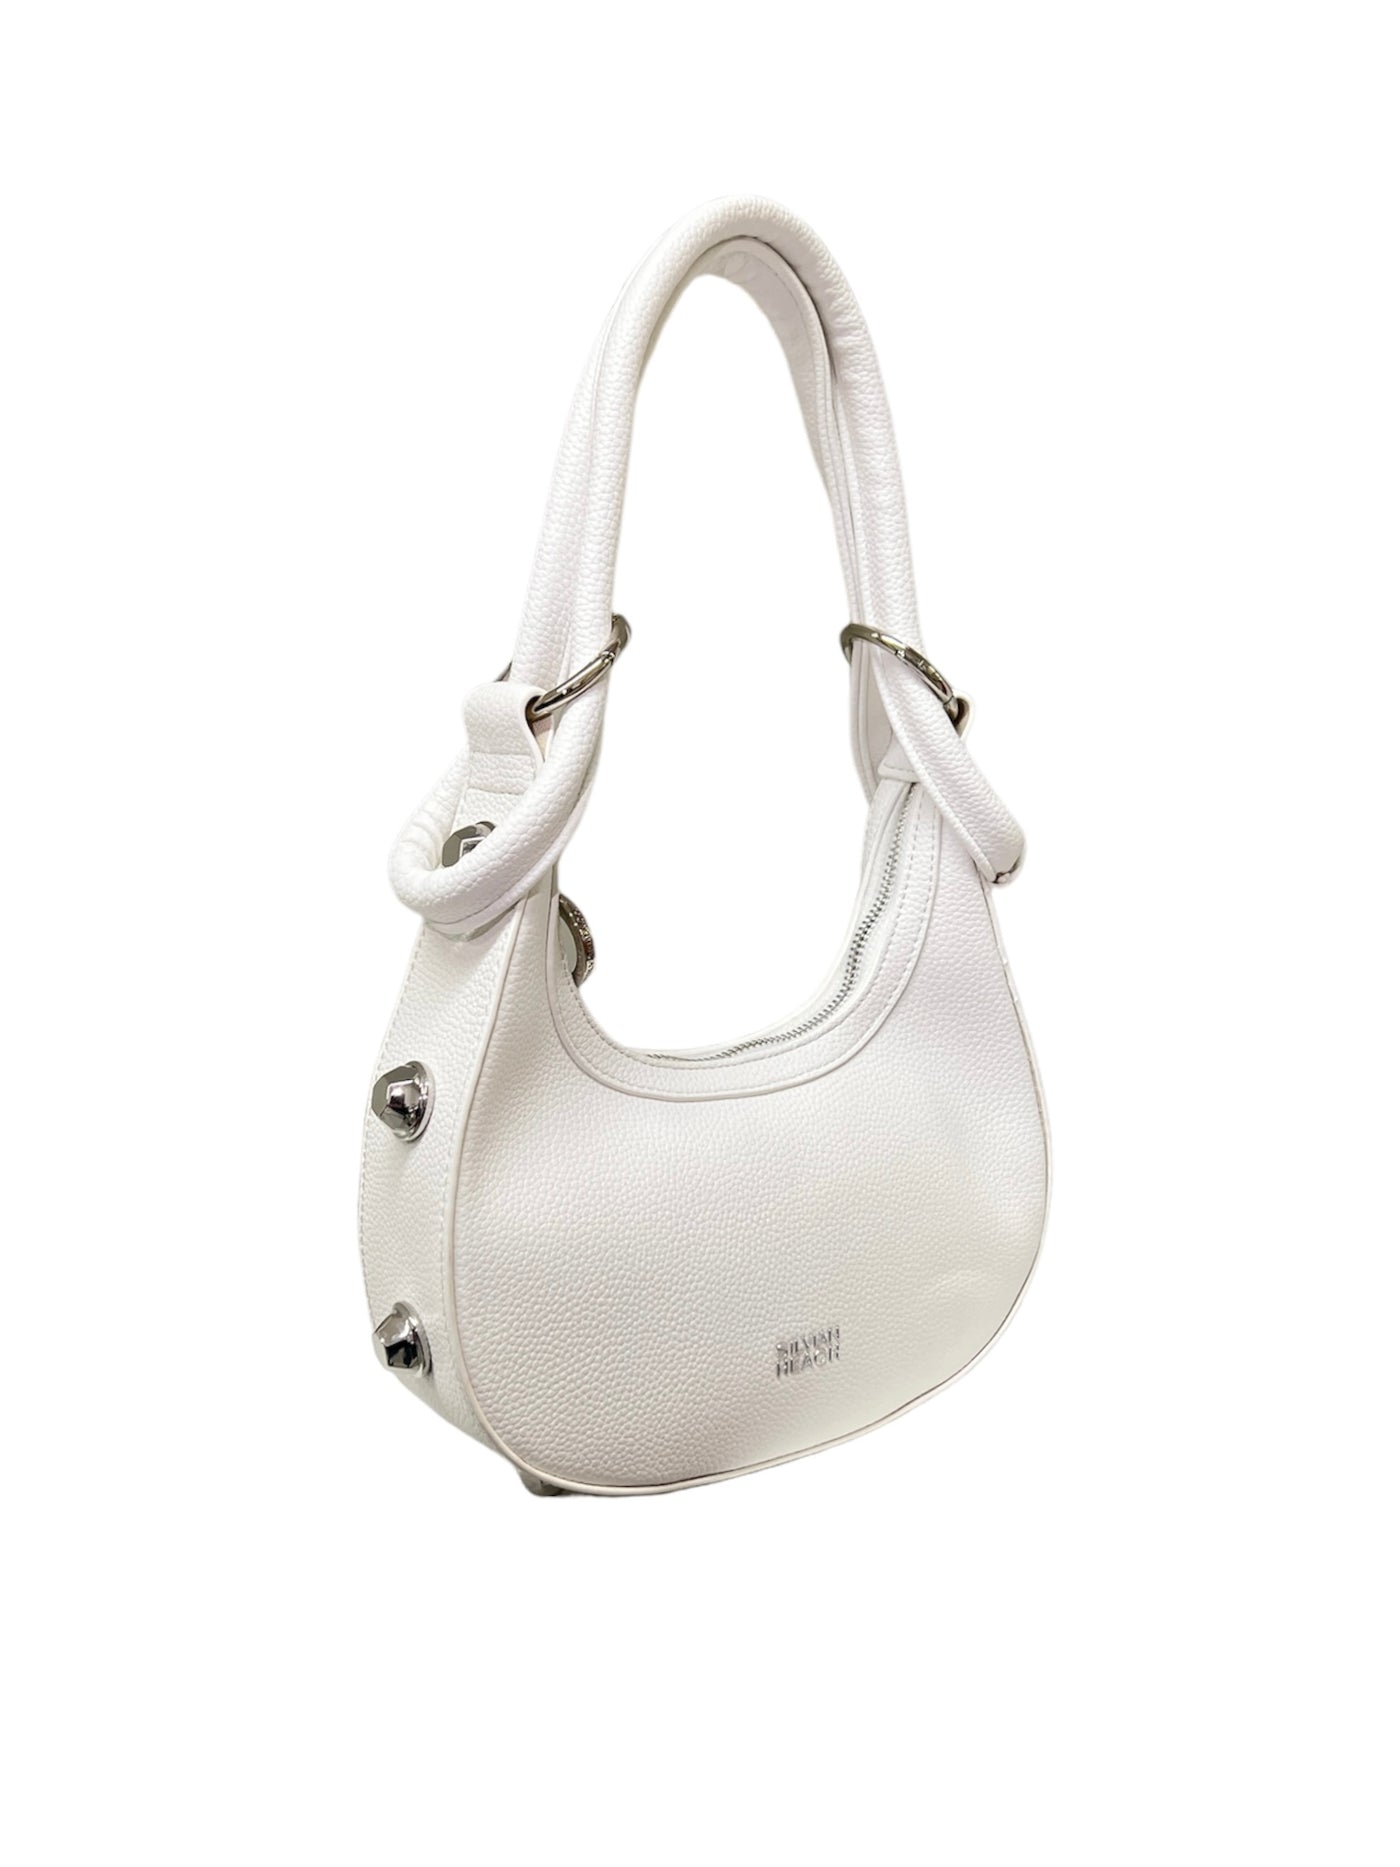 White Handbag With Silver Studs & Shoulder Strap Detailing